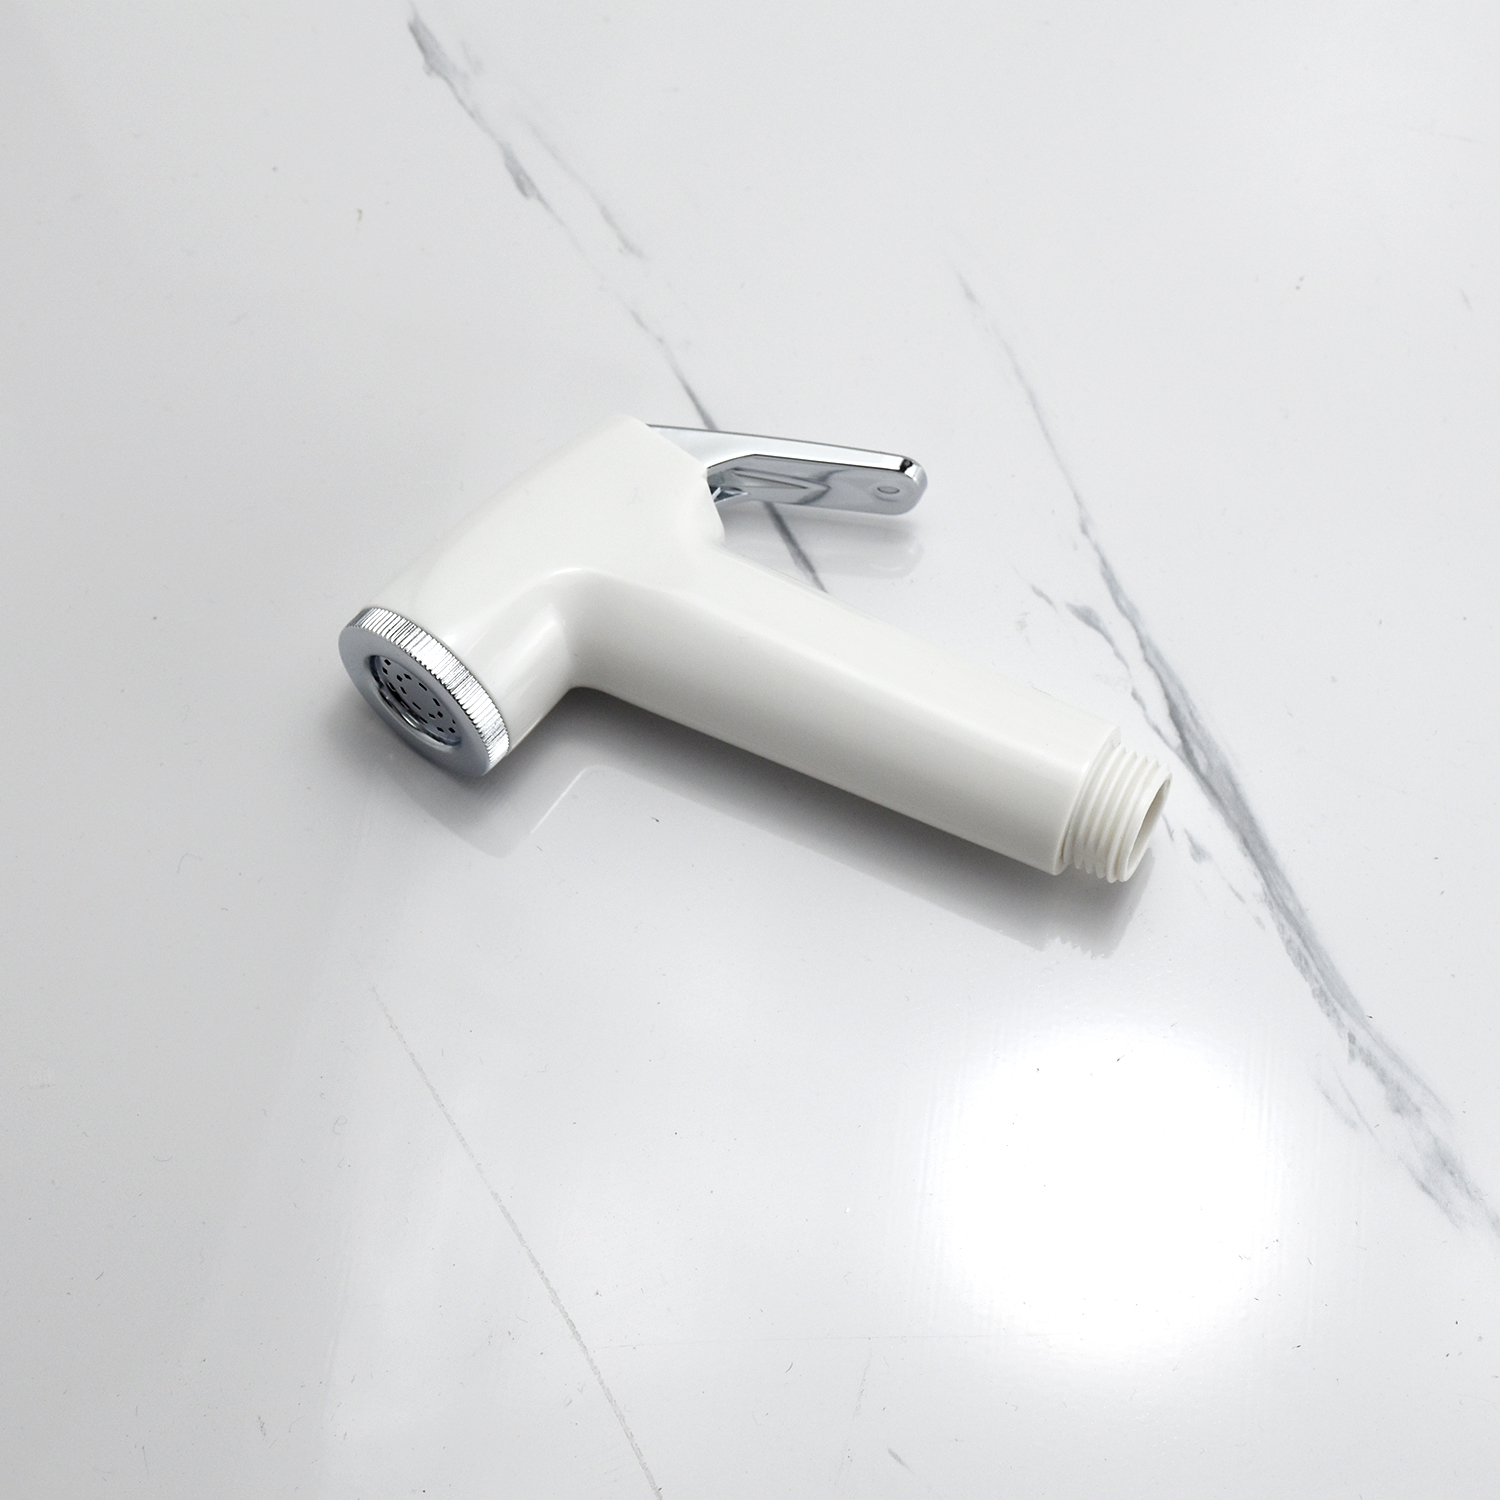 Bộ vòi xịt vệ sinh đa năng chất liệu nhựa ABS mạ màu trắng sứ PJF-301 cao cấp Hiwin